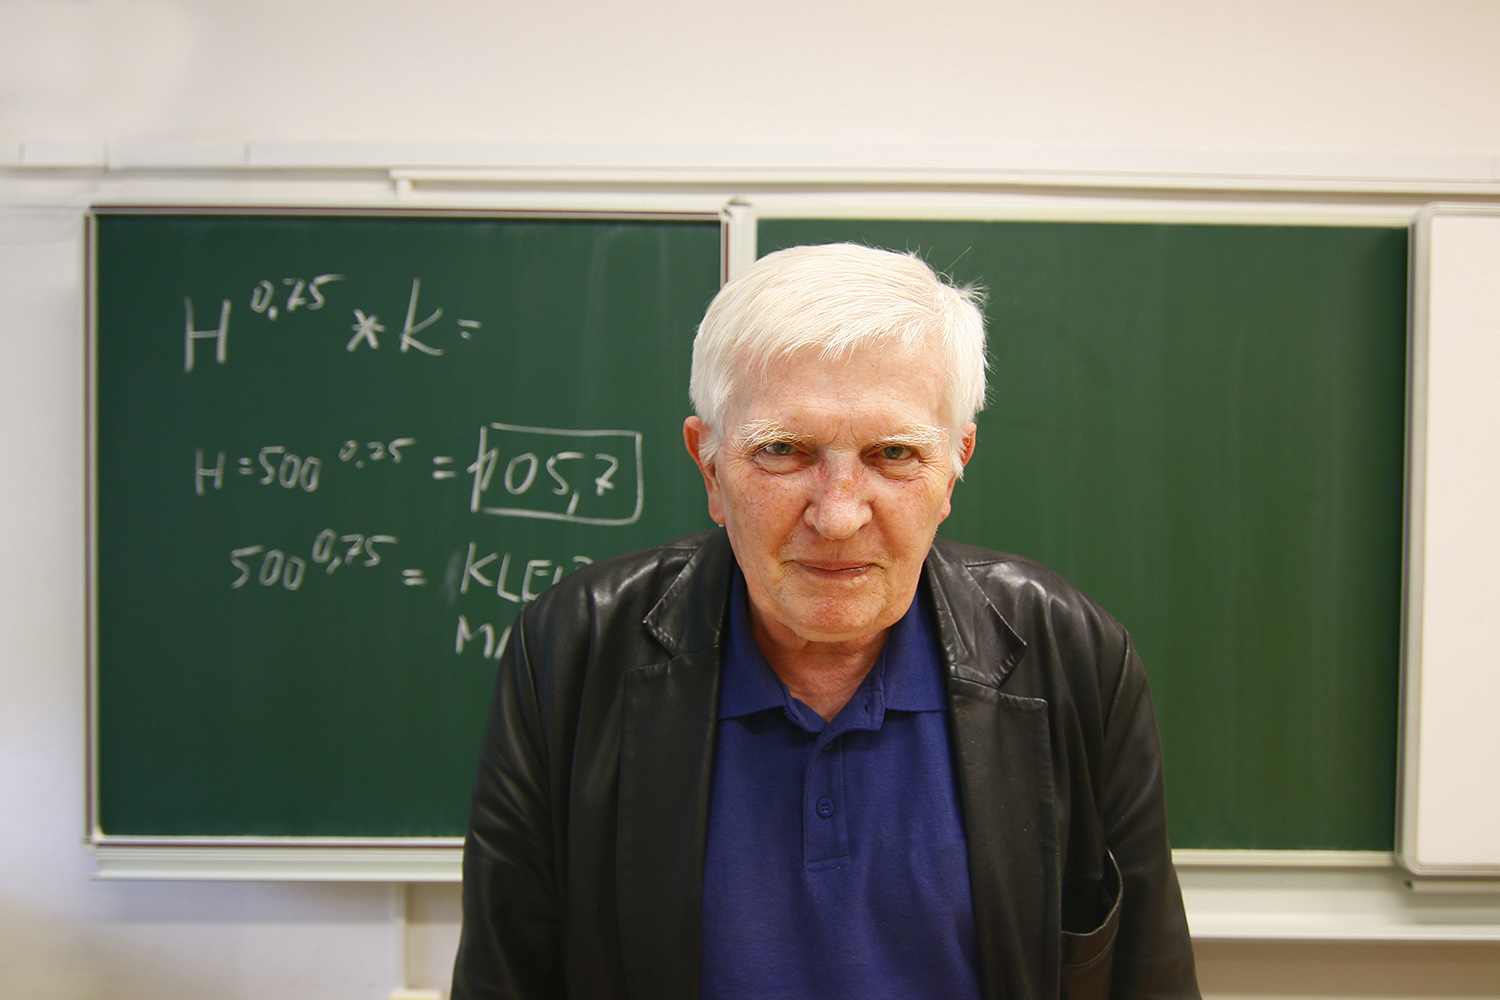 profesor_zeman